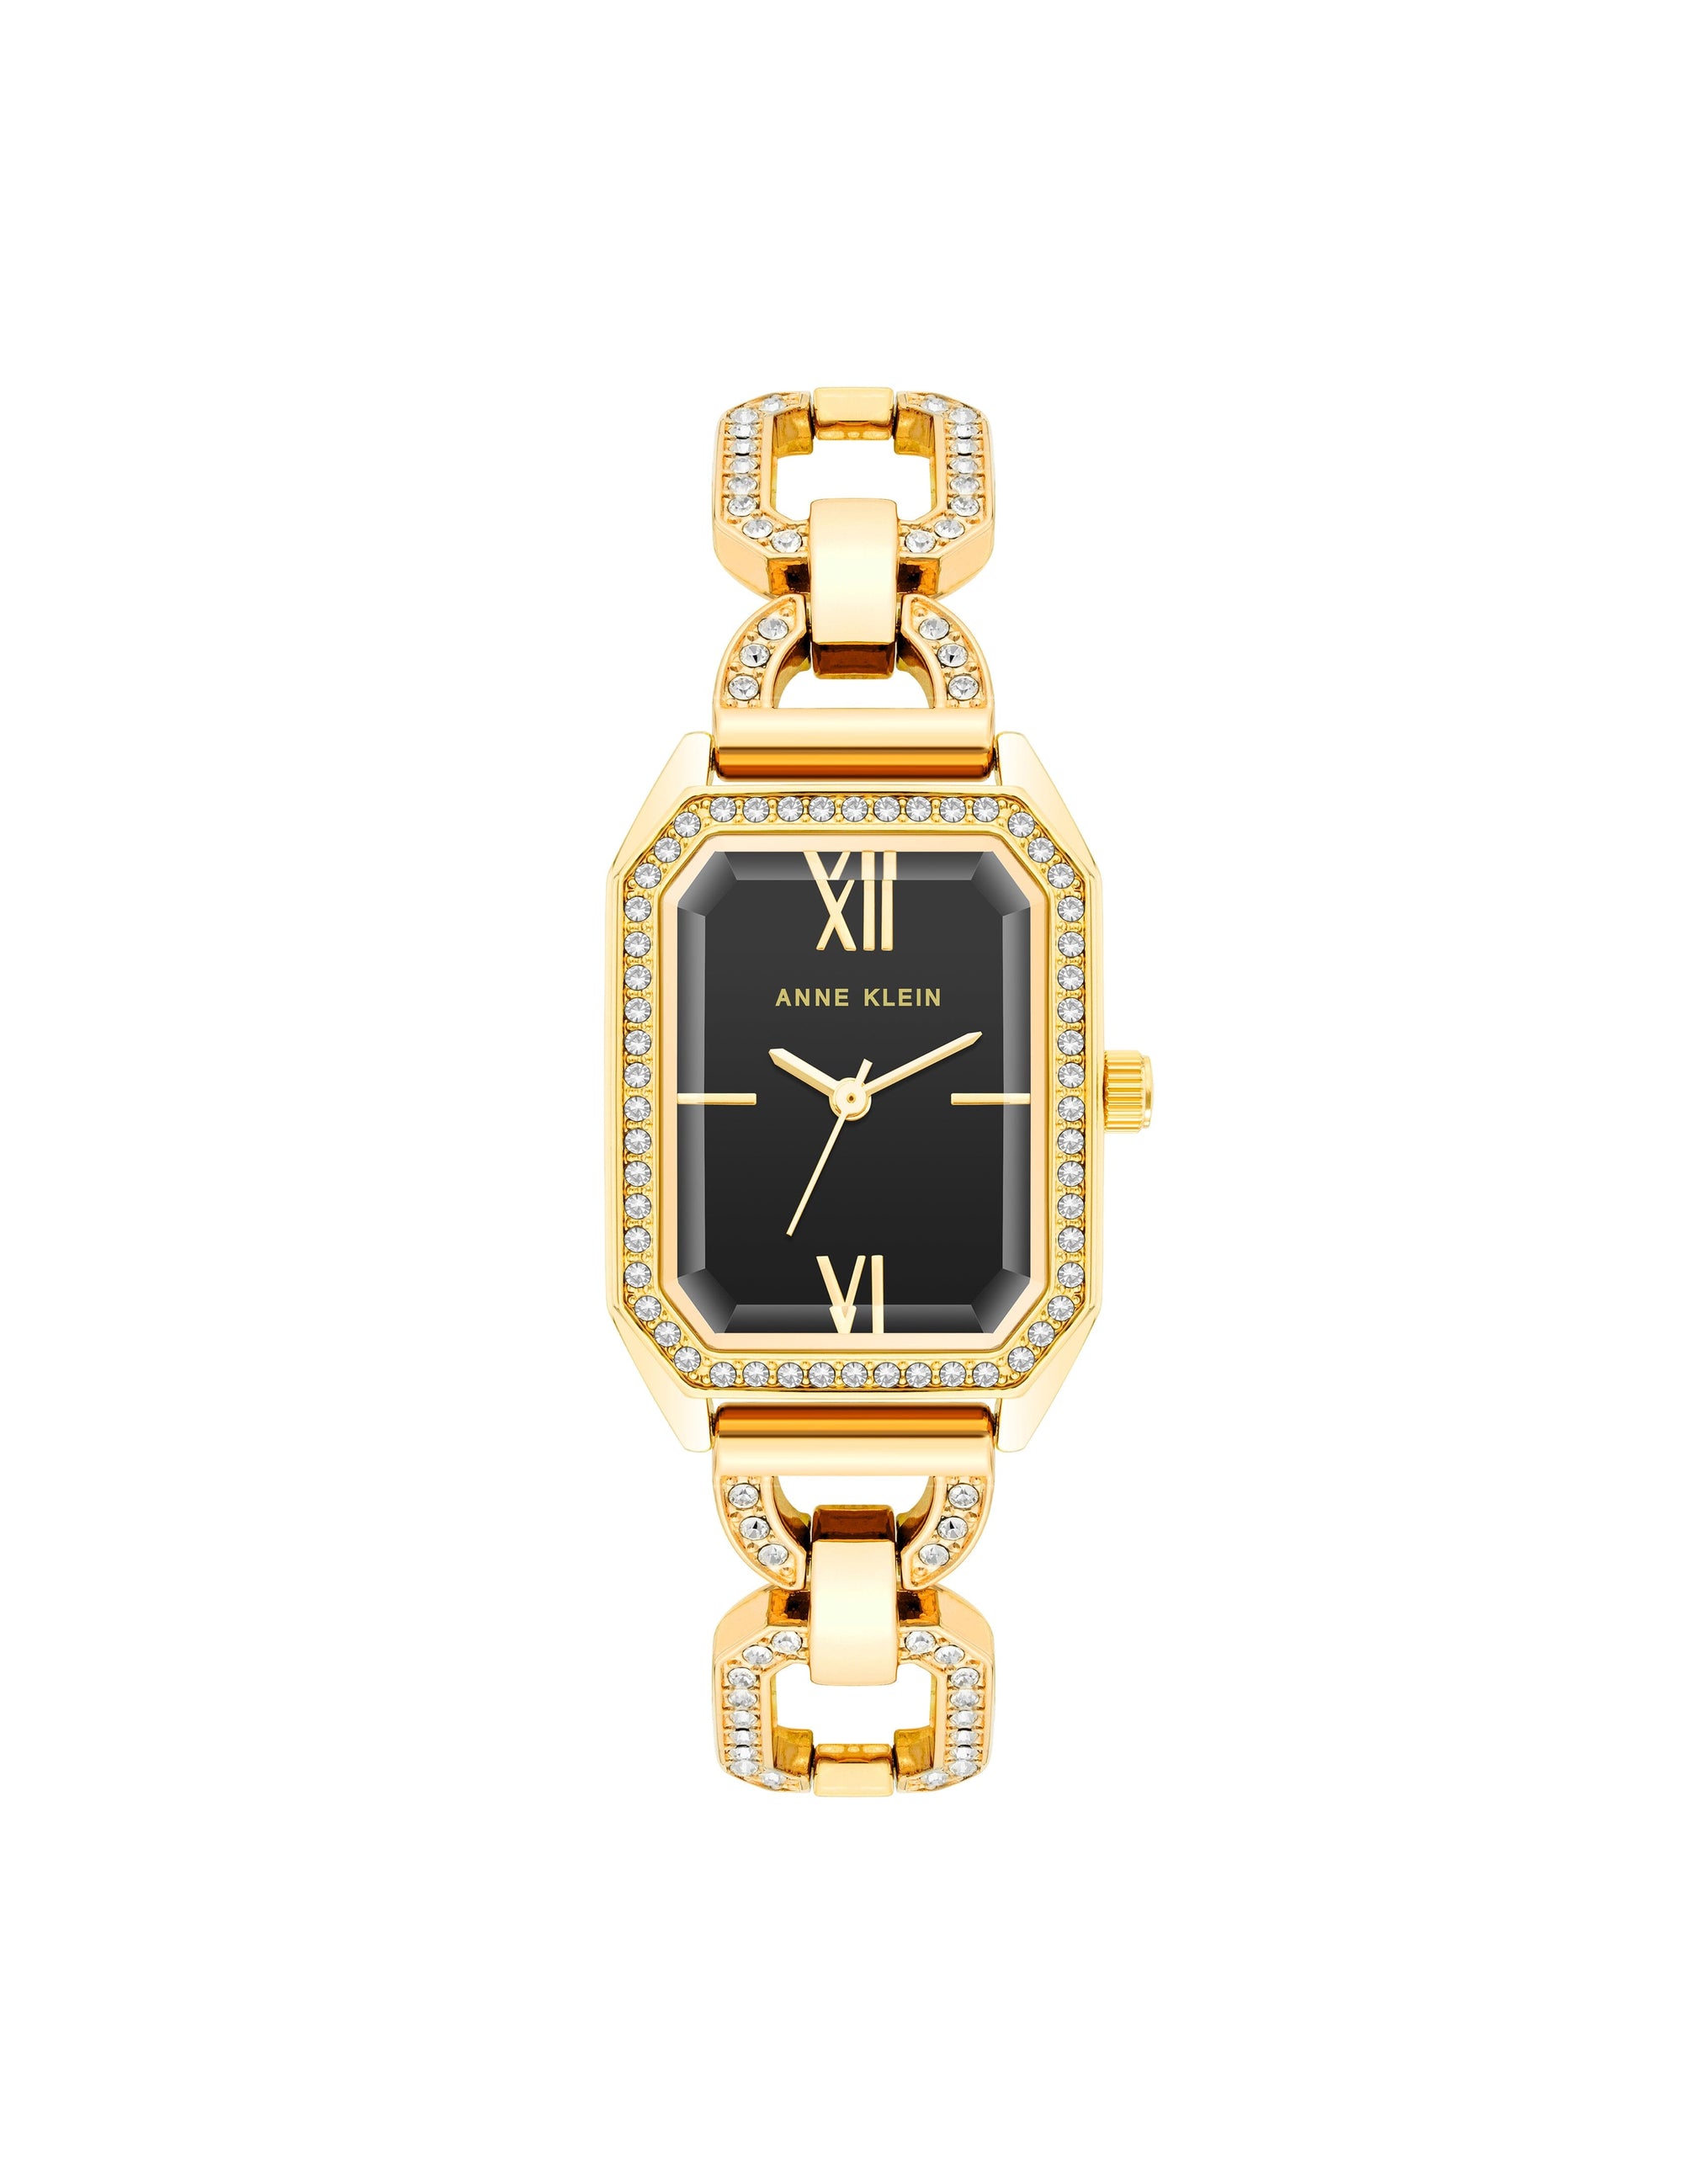 Aiverc Modern Luxury Watches adorn your wrist in style | Luxury watches,  Beautiful watches, Watch design